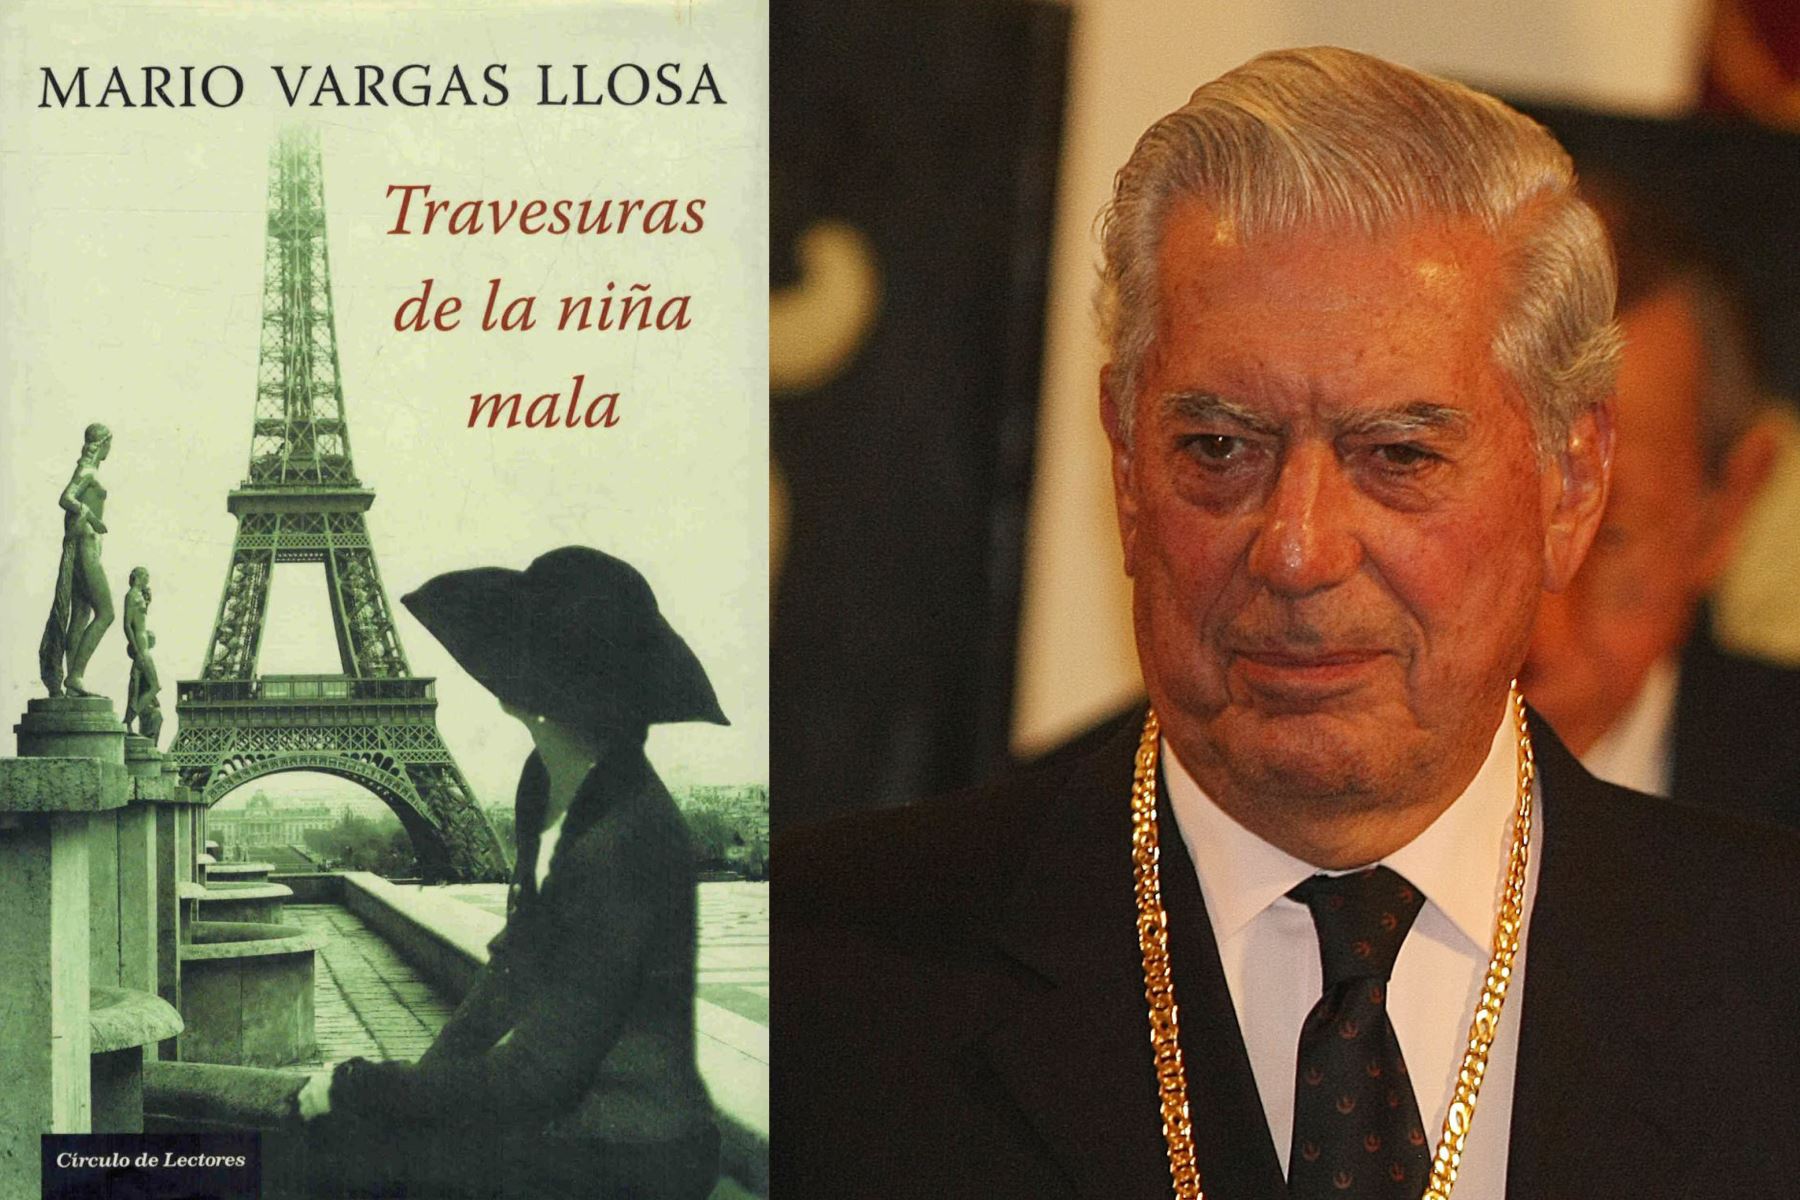 Travesuras de la niña mala: inician rodaje de serie adaptada de la novela de Vargas Llosa